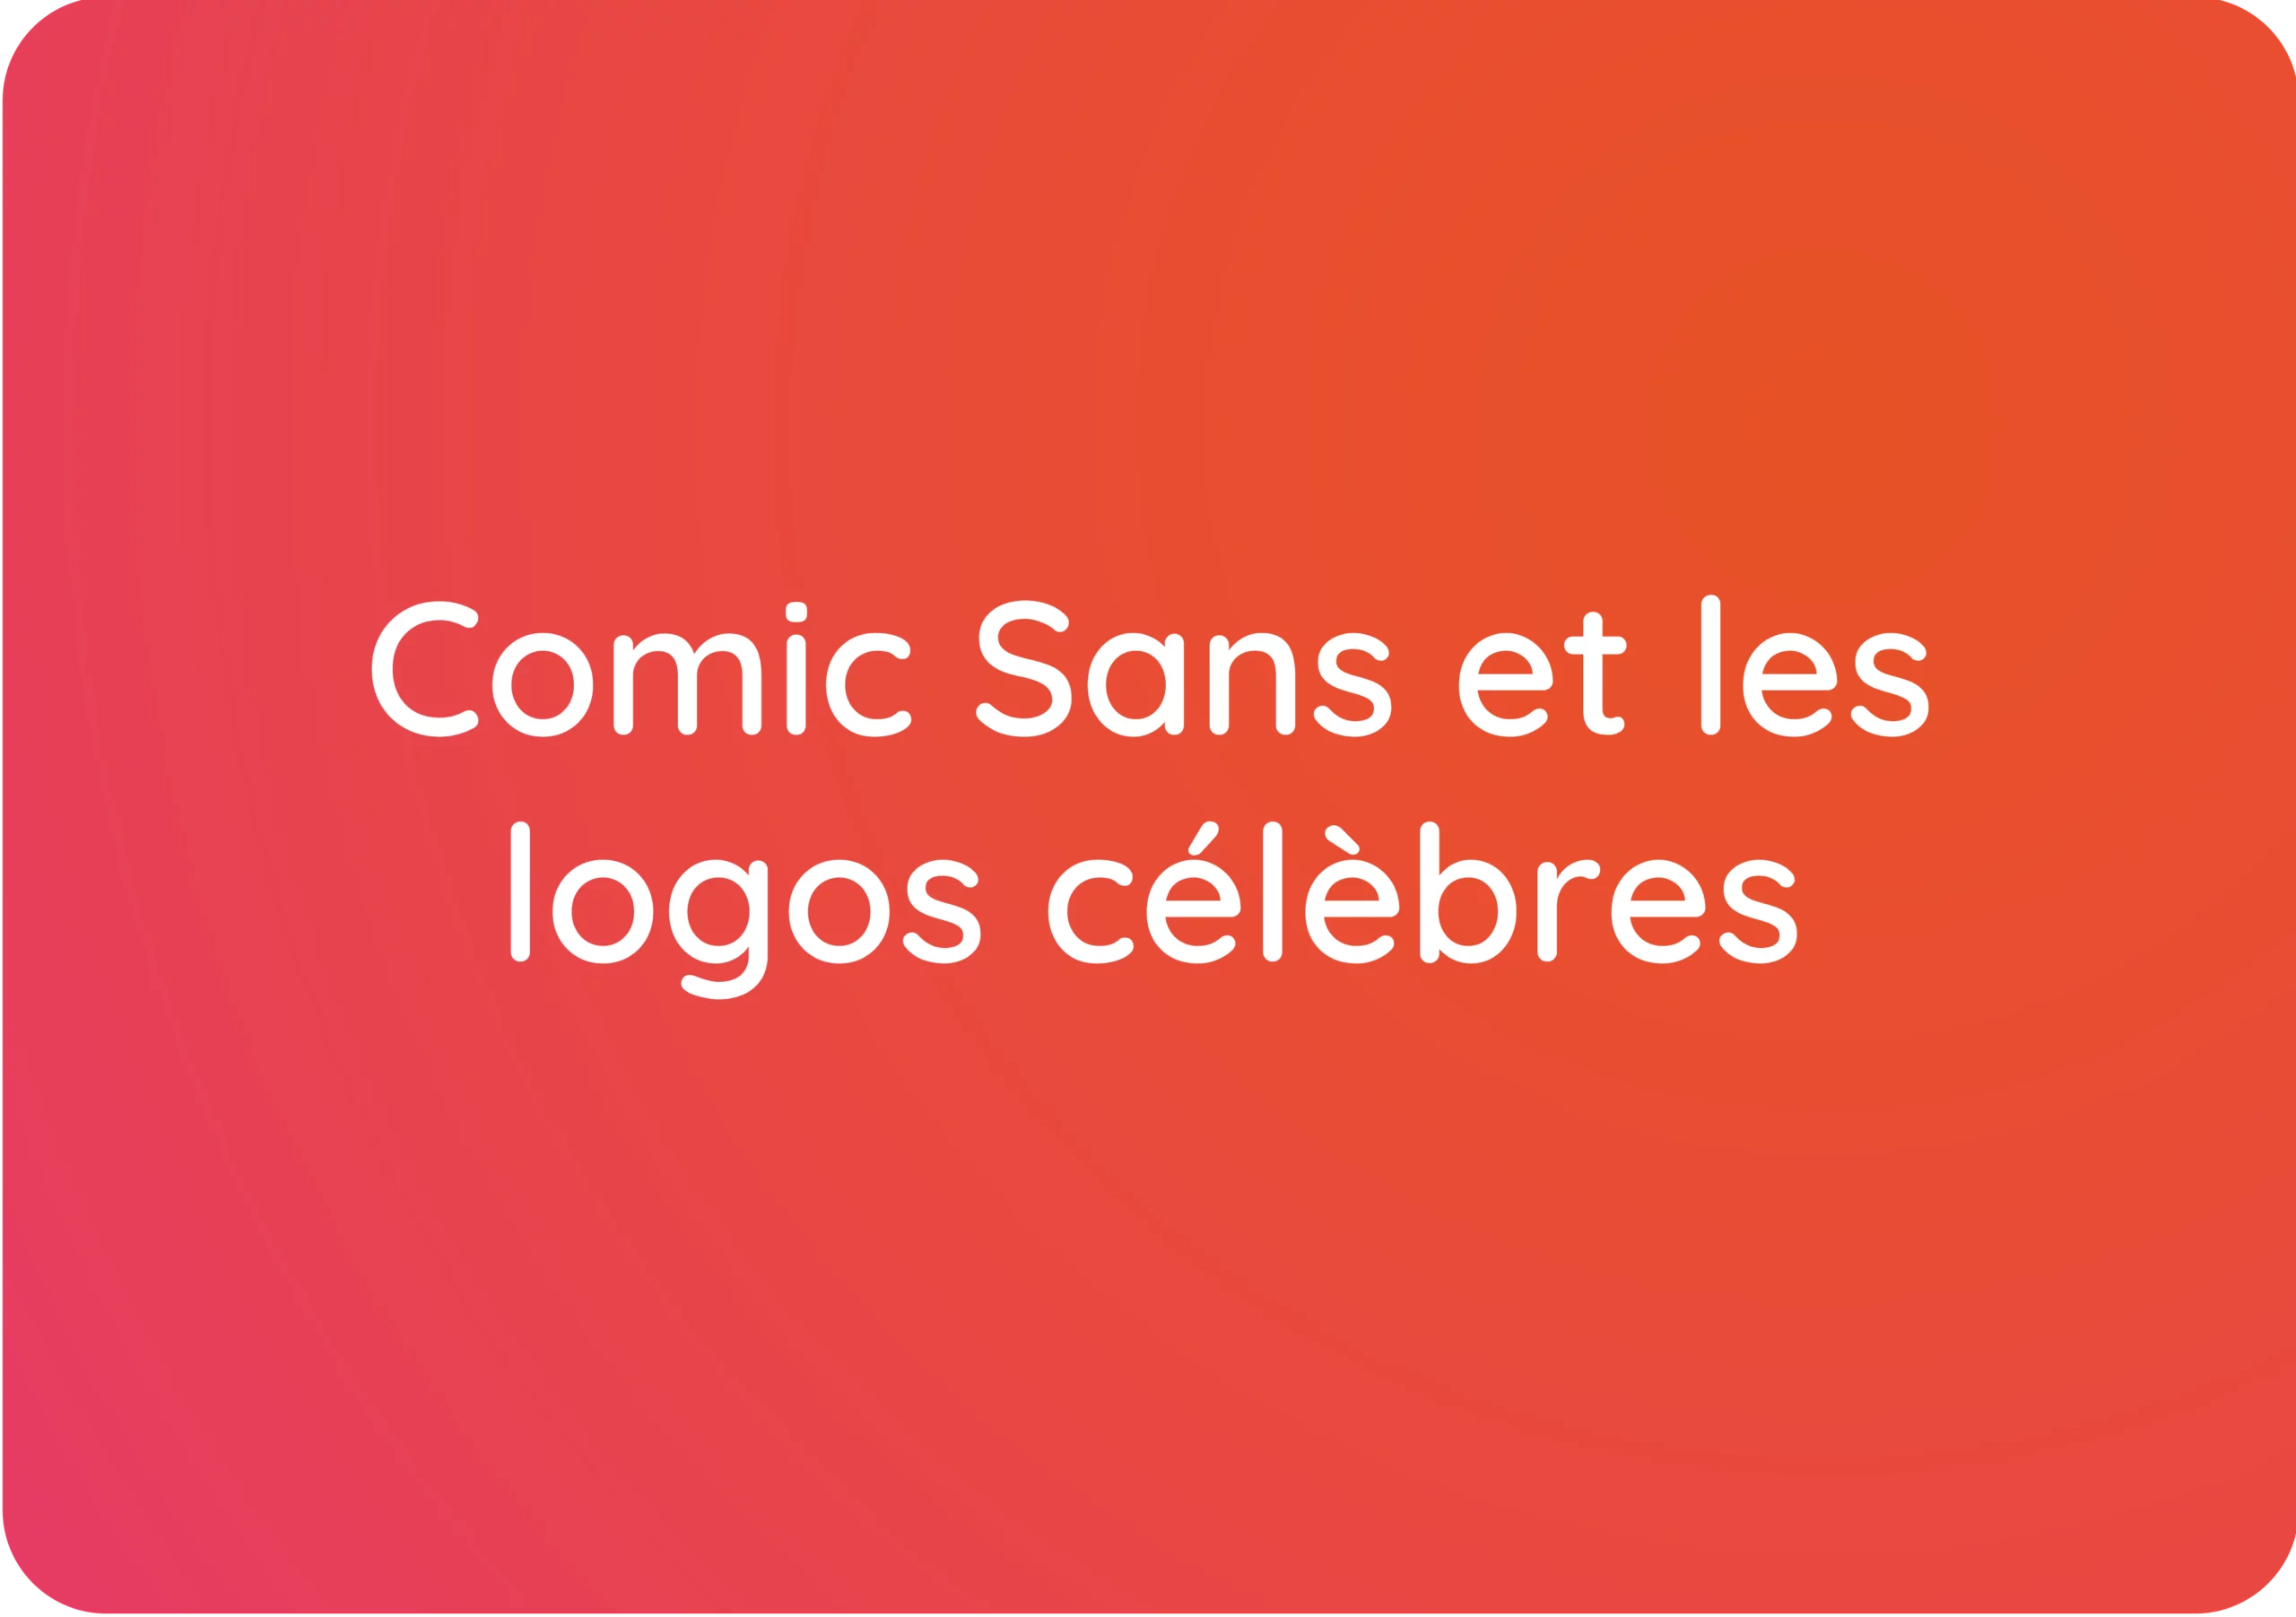 Comic Sans: La police de caractères controversée qui refait surface